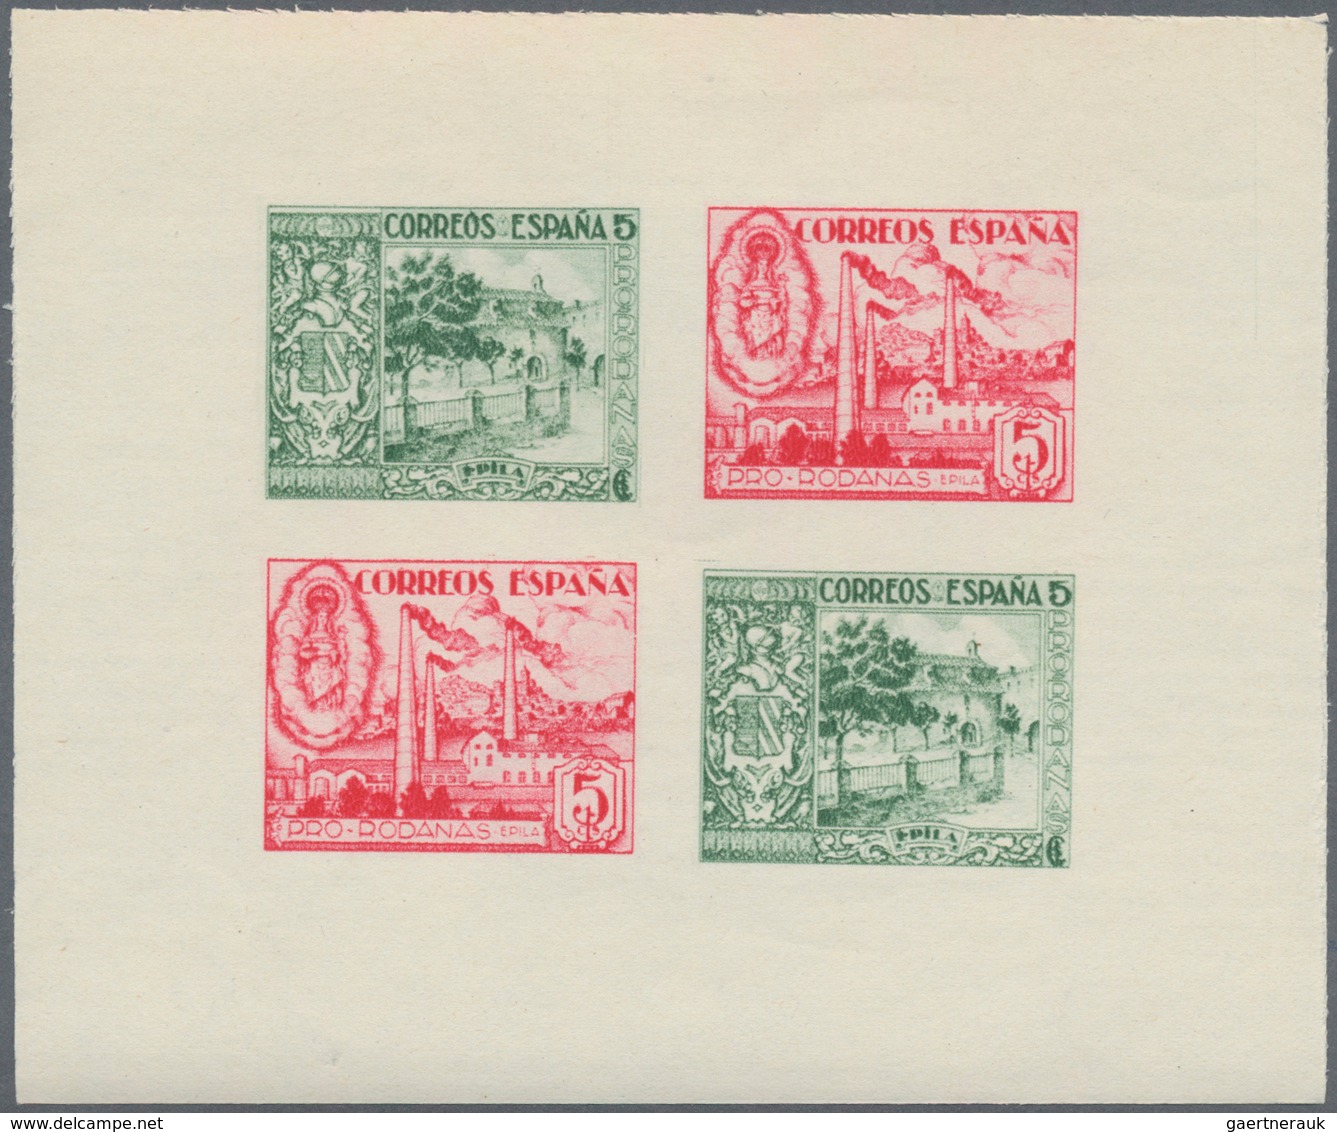 Spanien - Lokalausgaben: 1937, EPILA (Pro Rodanas): Civil War IMPERFORATE Miniature Sheet With Stamp - Nationalistische Ausgaben